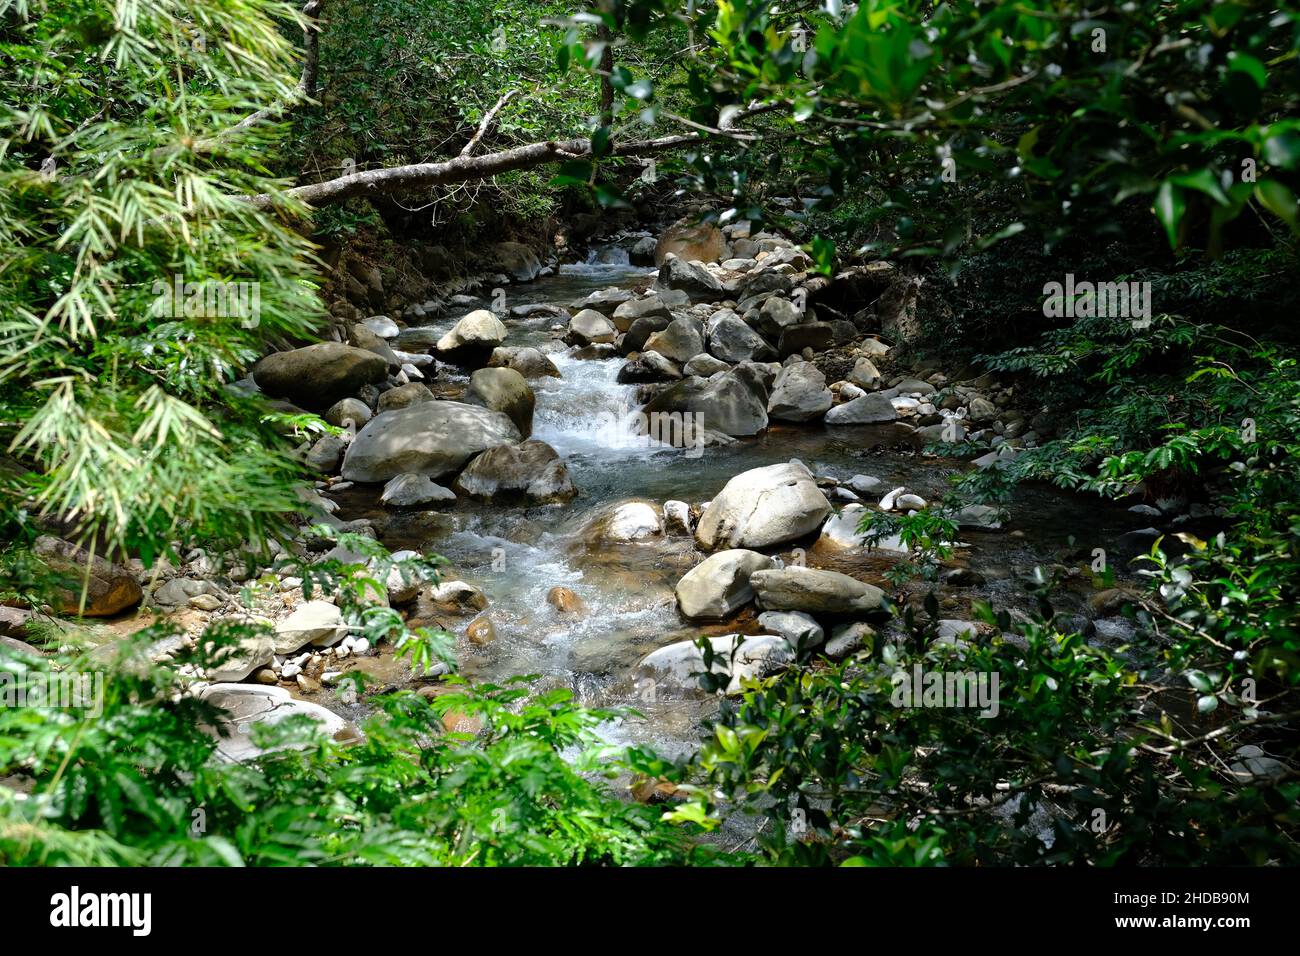 Costa Rica Rincon de la Vieja National Park - Stream with rocky river bed Stock Photo